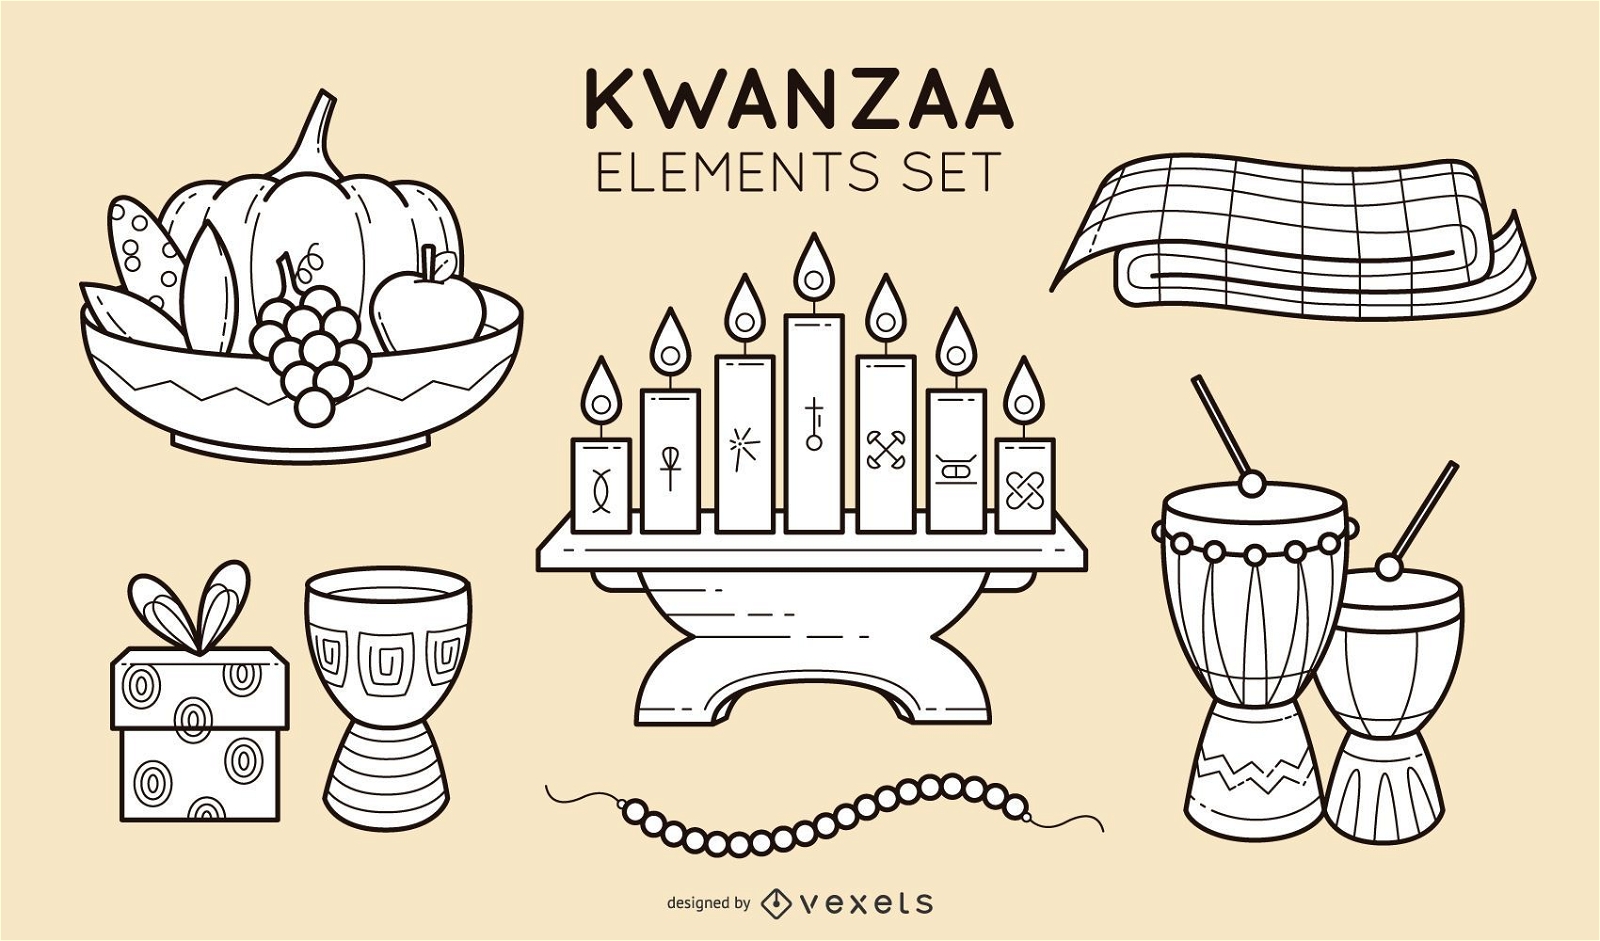 Kwanzaa stroke elements set